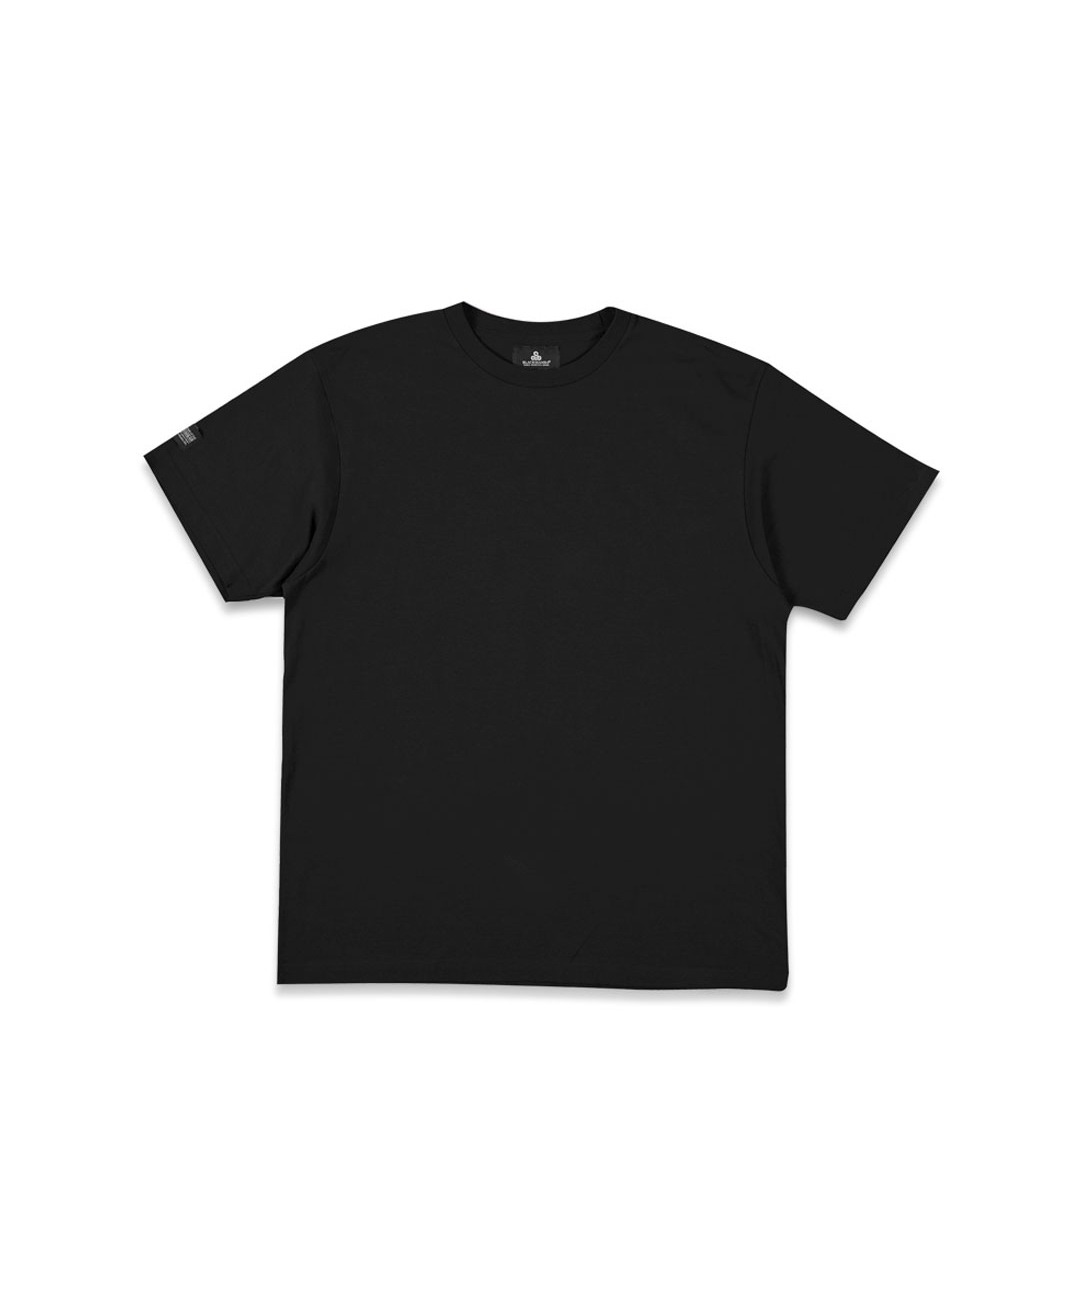 데일리 무지 반팔 티셔츠 (블랙)